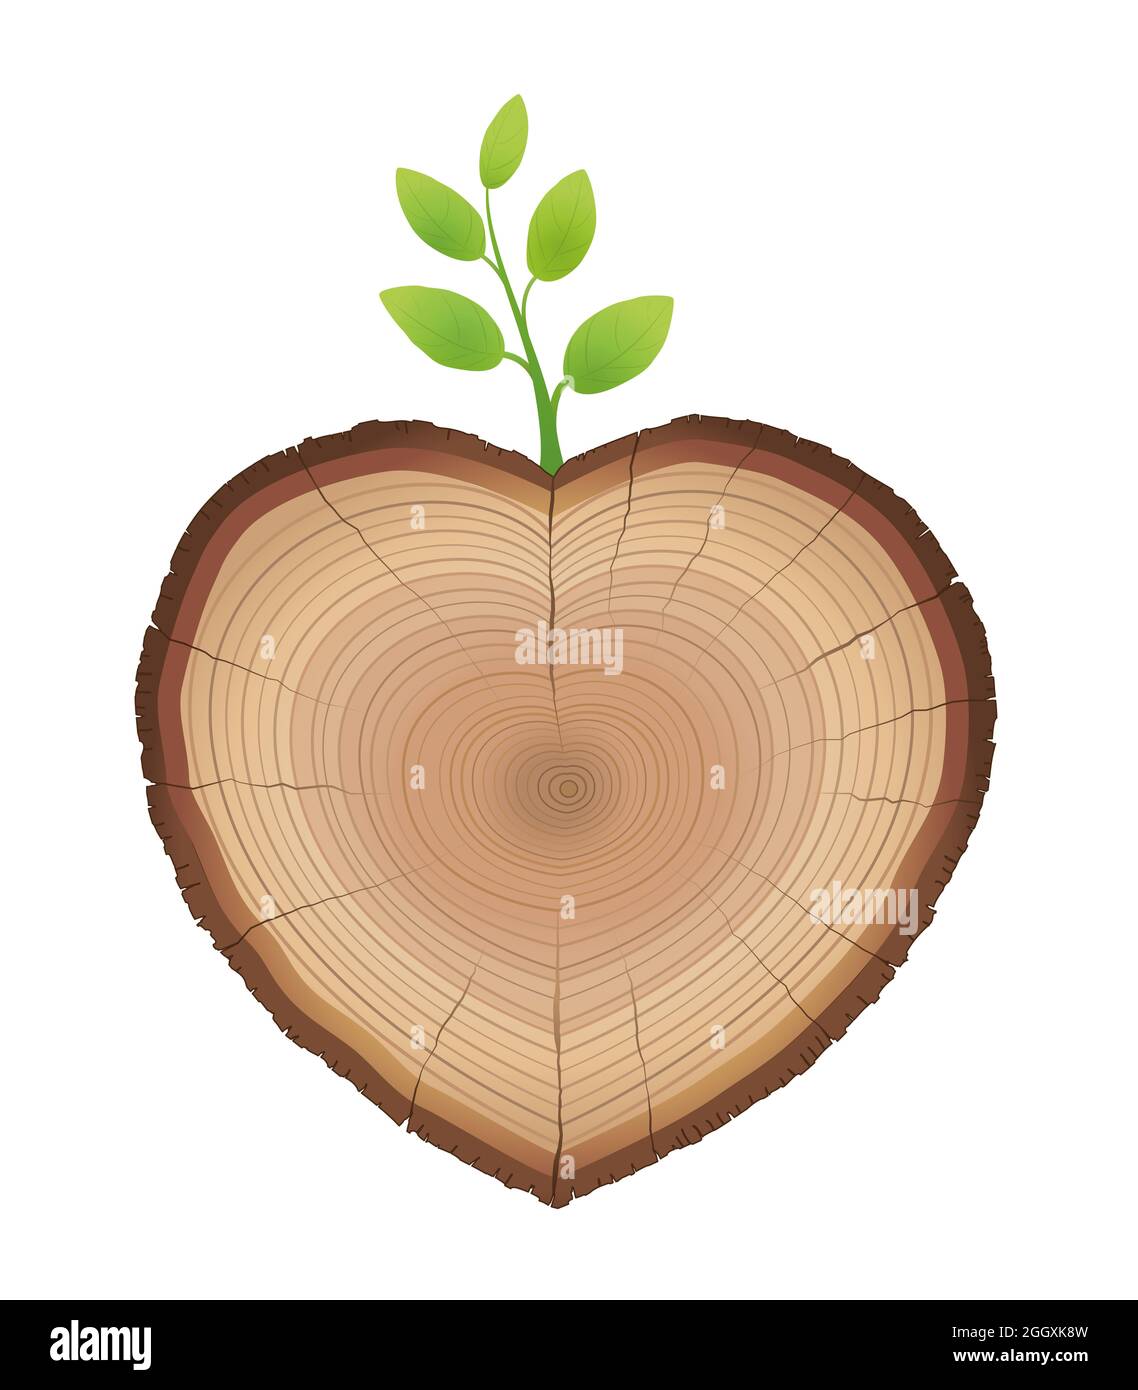 Corte de árbol, en forma de corazón, con brotes jóvenes que crecen de él - tronco de madera con ramita verde - símbolo de la naturaleza amorosa y el crecimiento. Foto de stock